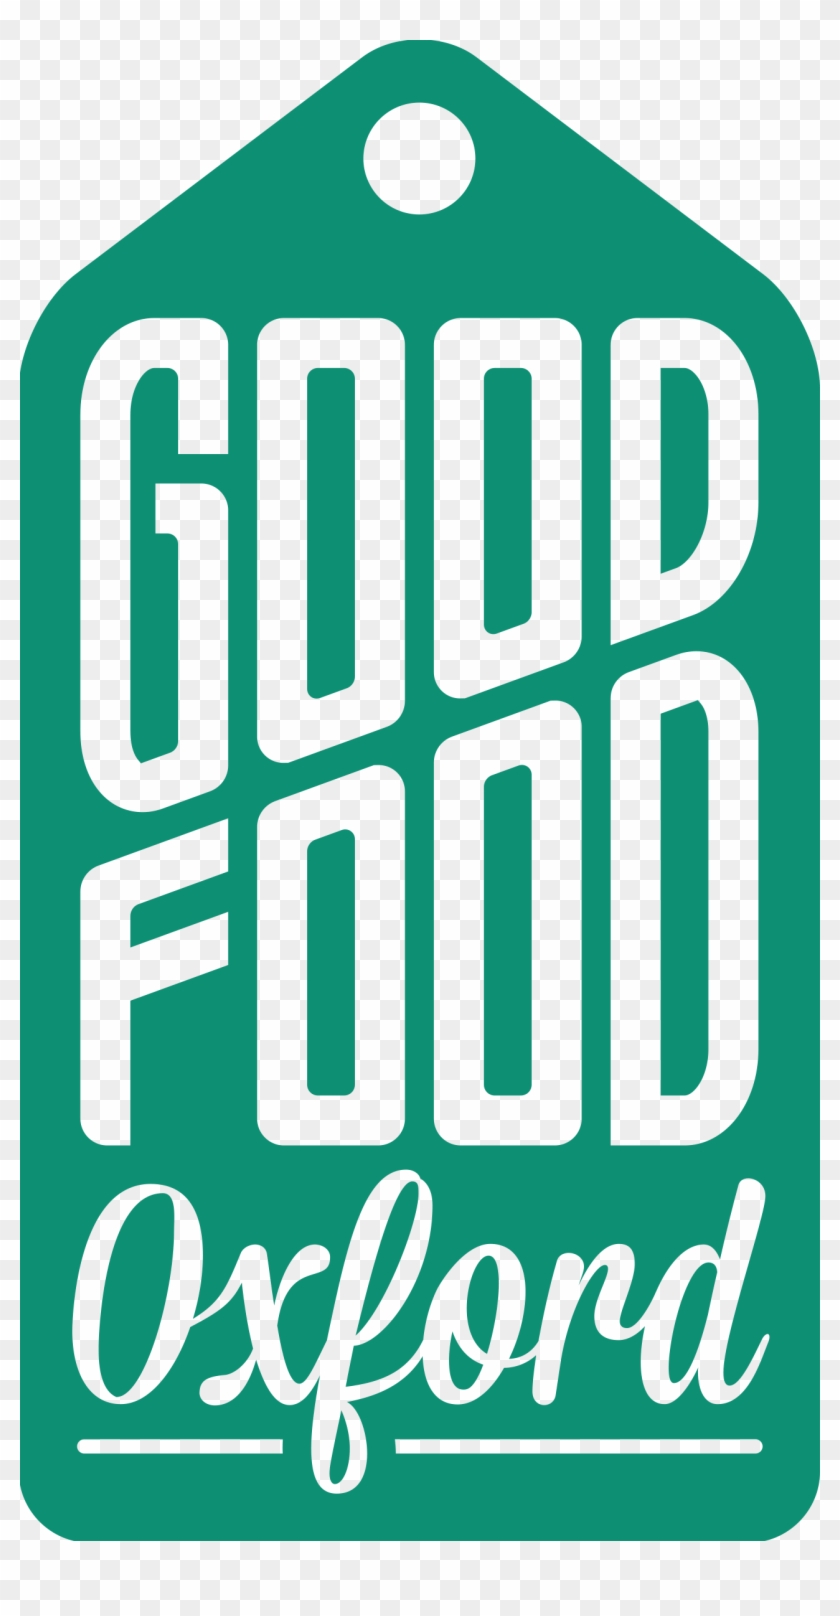 Good Food Oxford Logo 01 No White - Good Food Oxford #605053